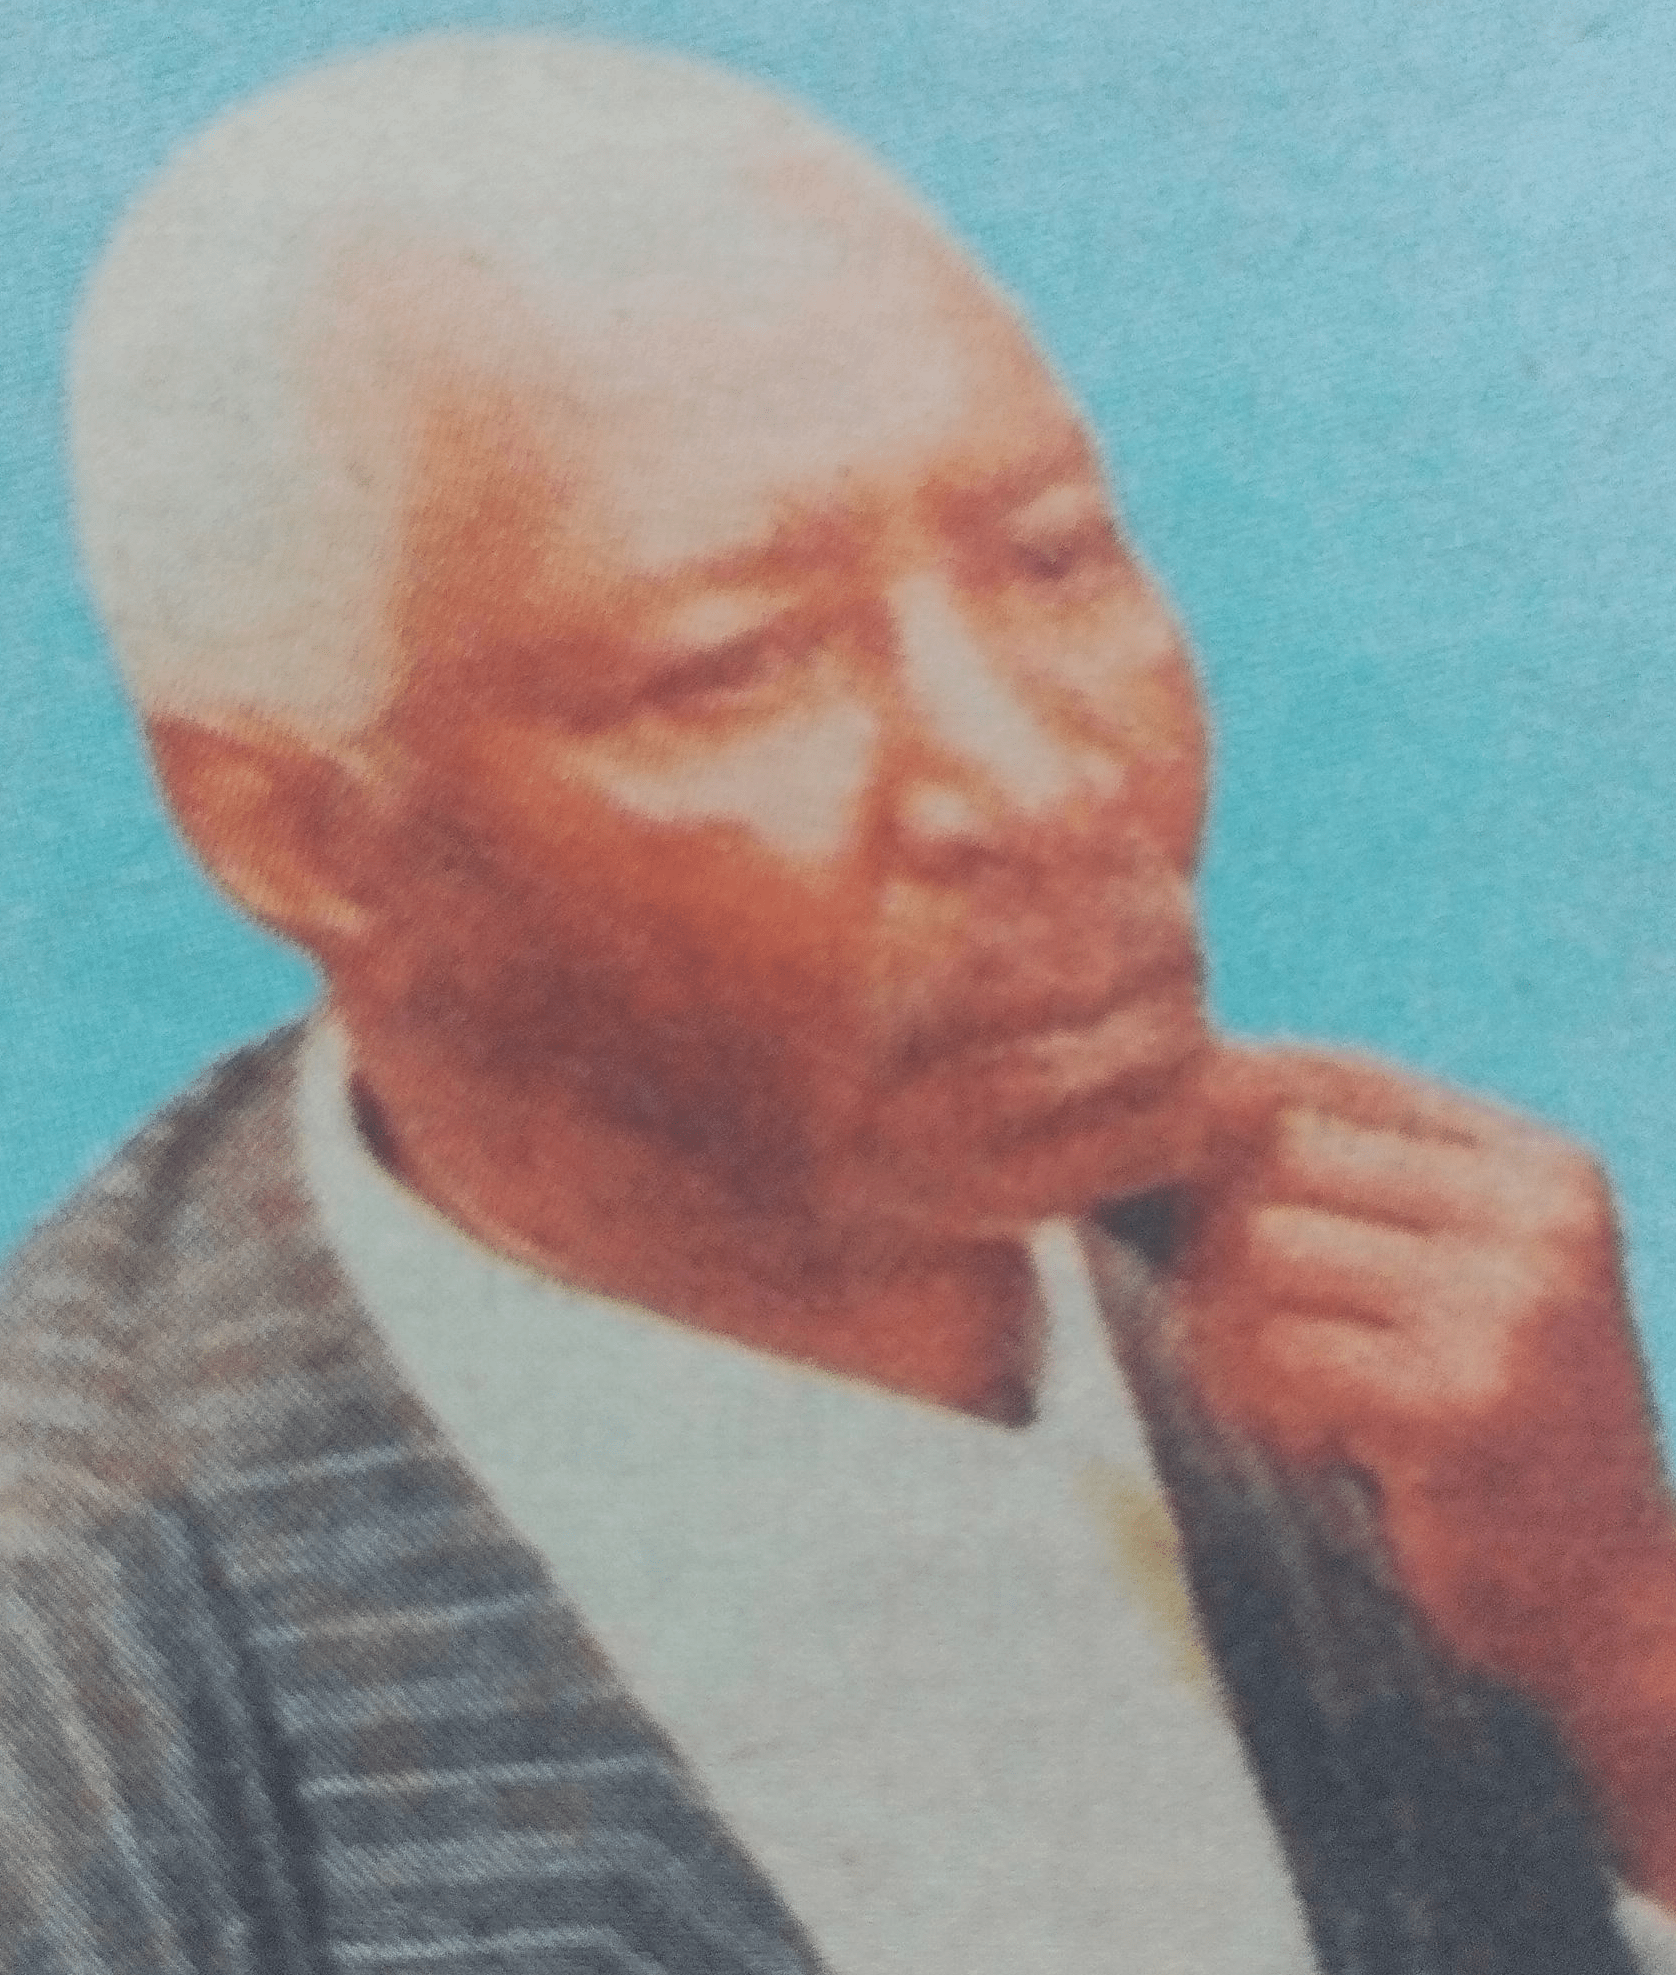 Obituary Image of James Wachira Wanjohi